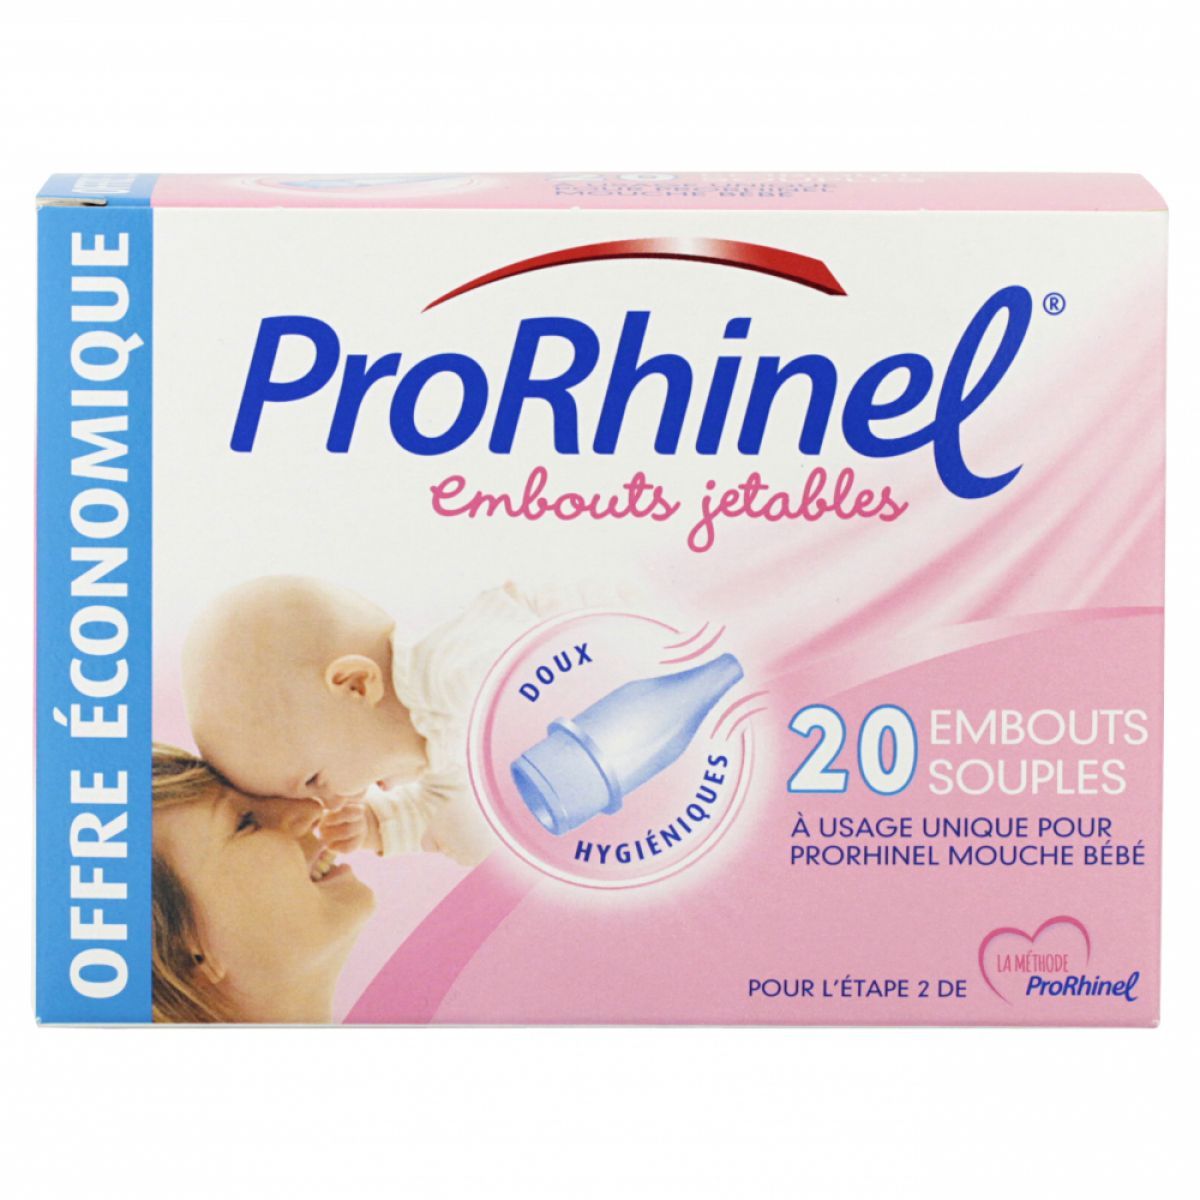 Les embouts jetables souples Prorhinel s'utilisent exclusivement avec le mouche  bébé Prorhinel.